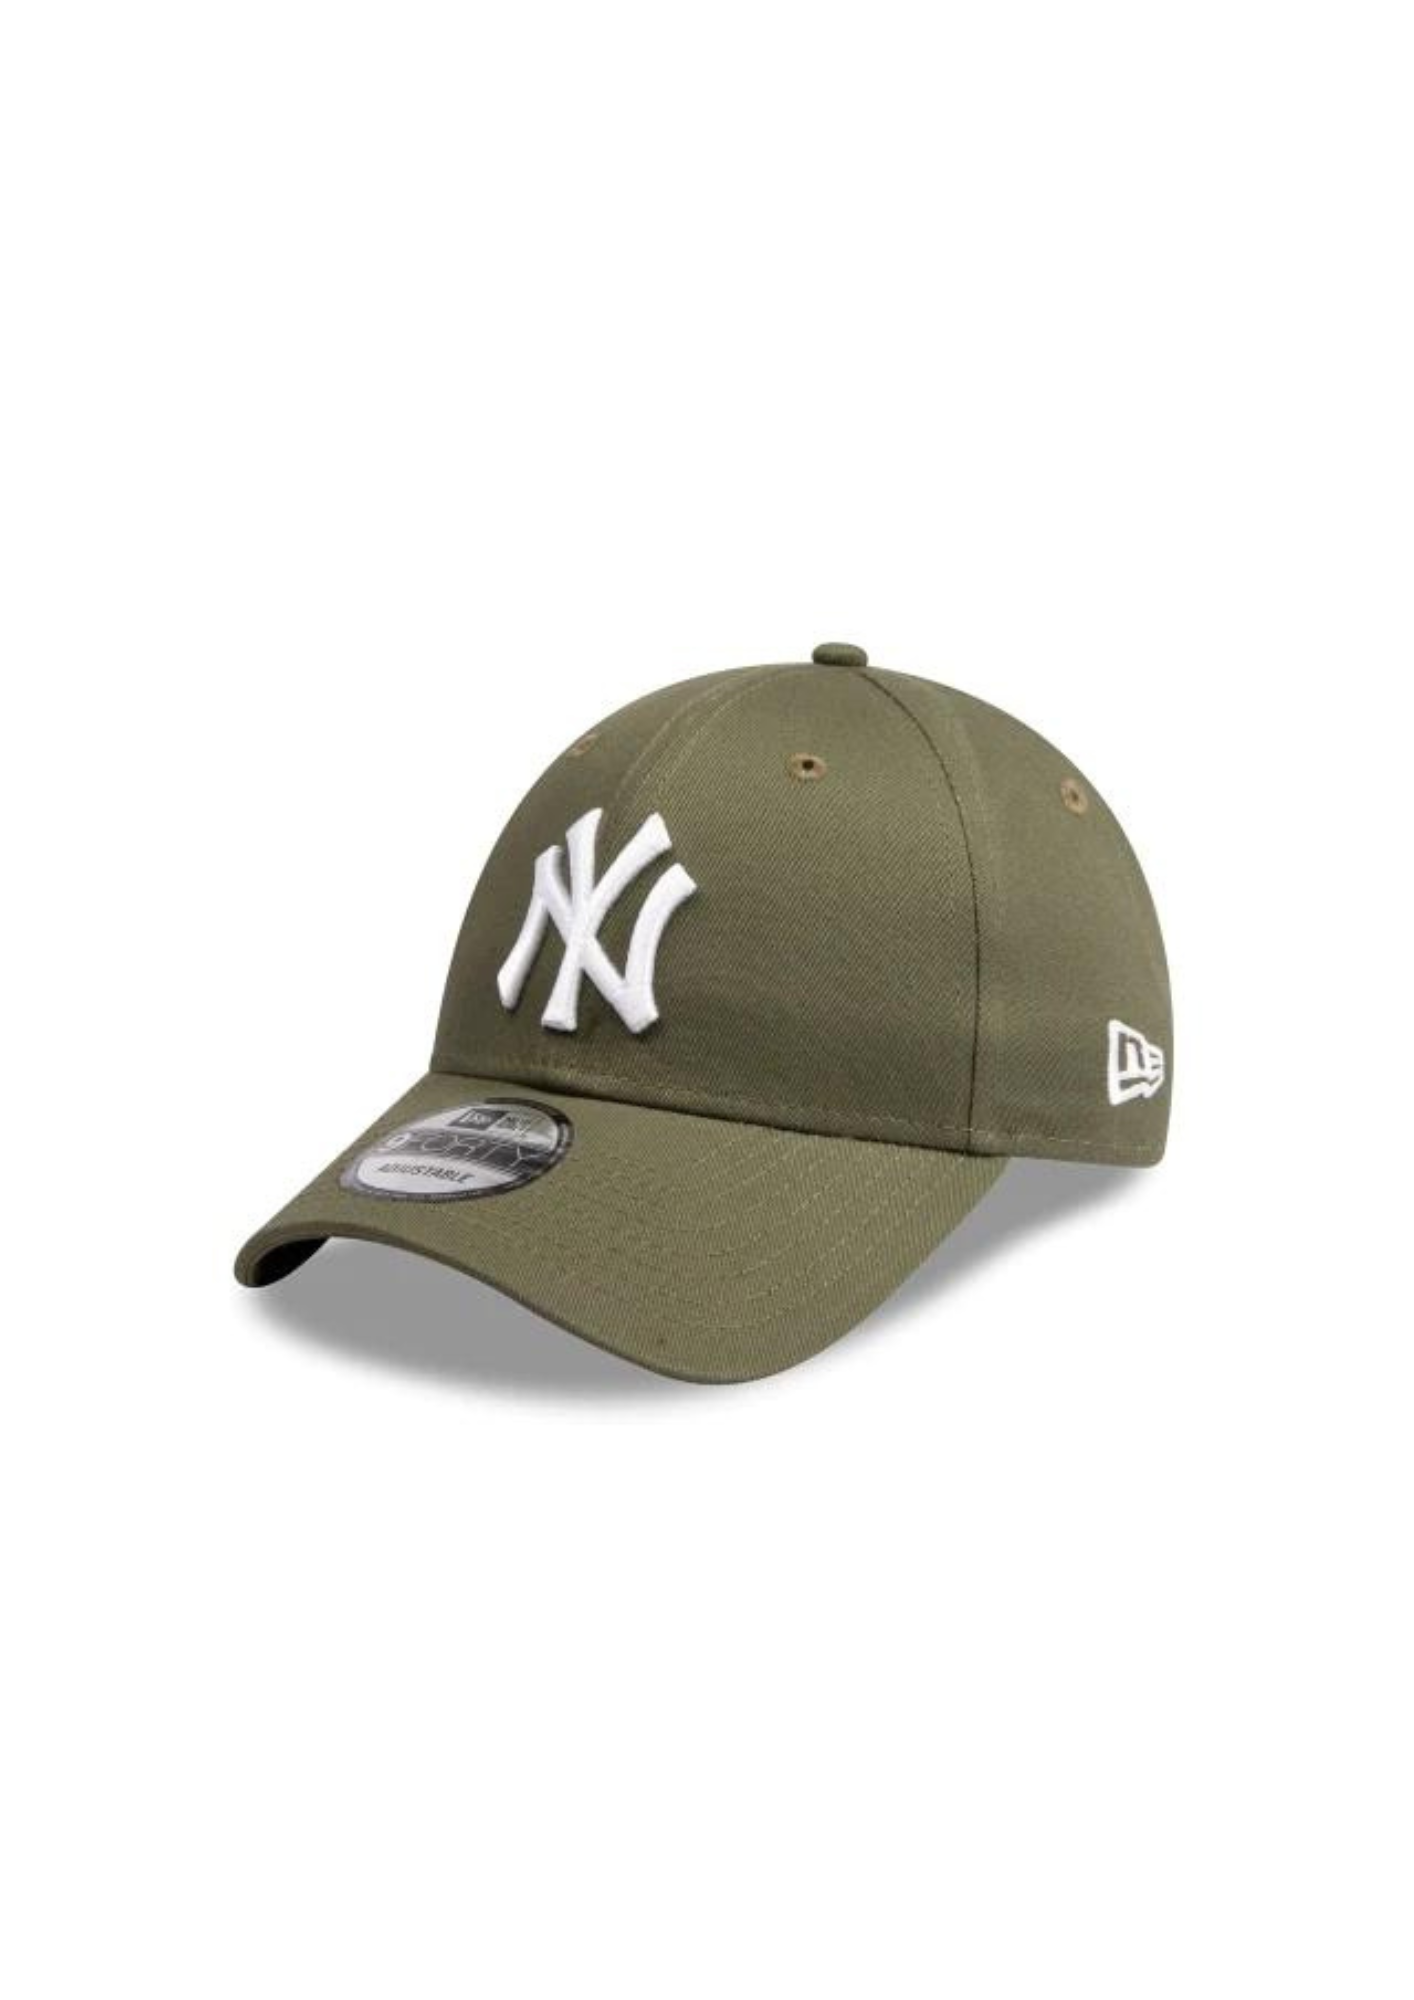 New Era Yankees 940CS NY Cap Olive